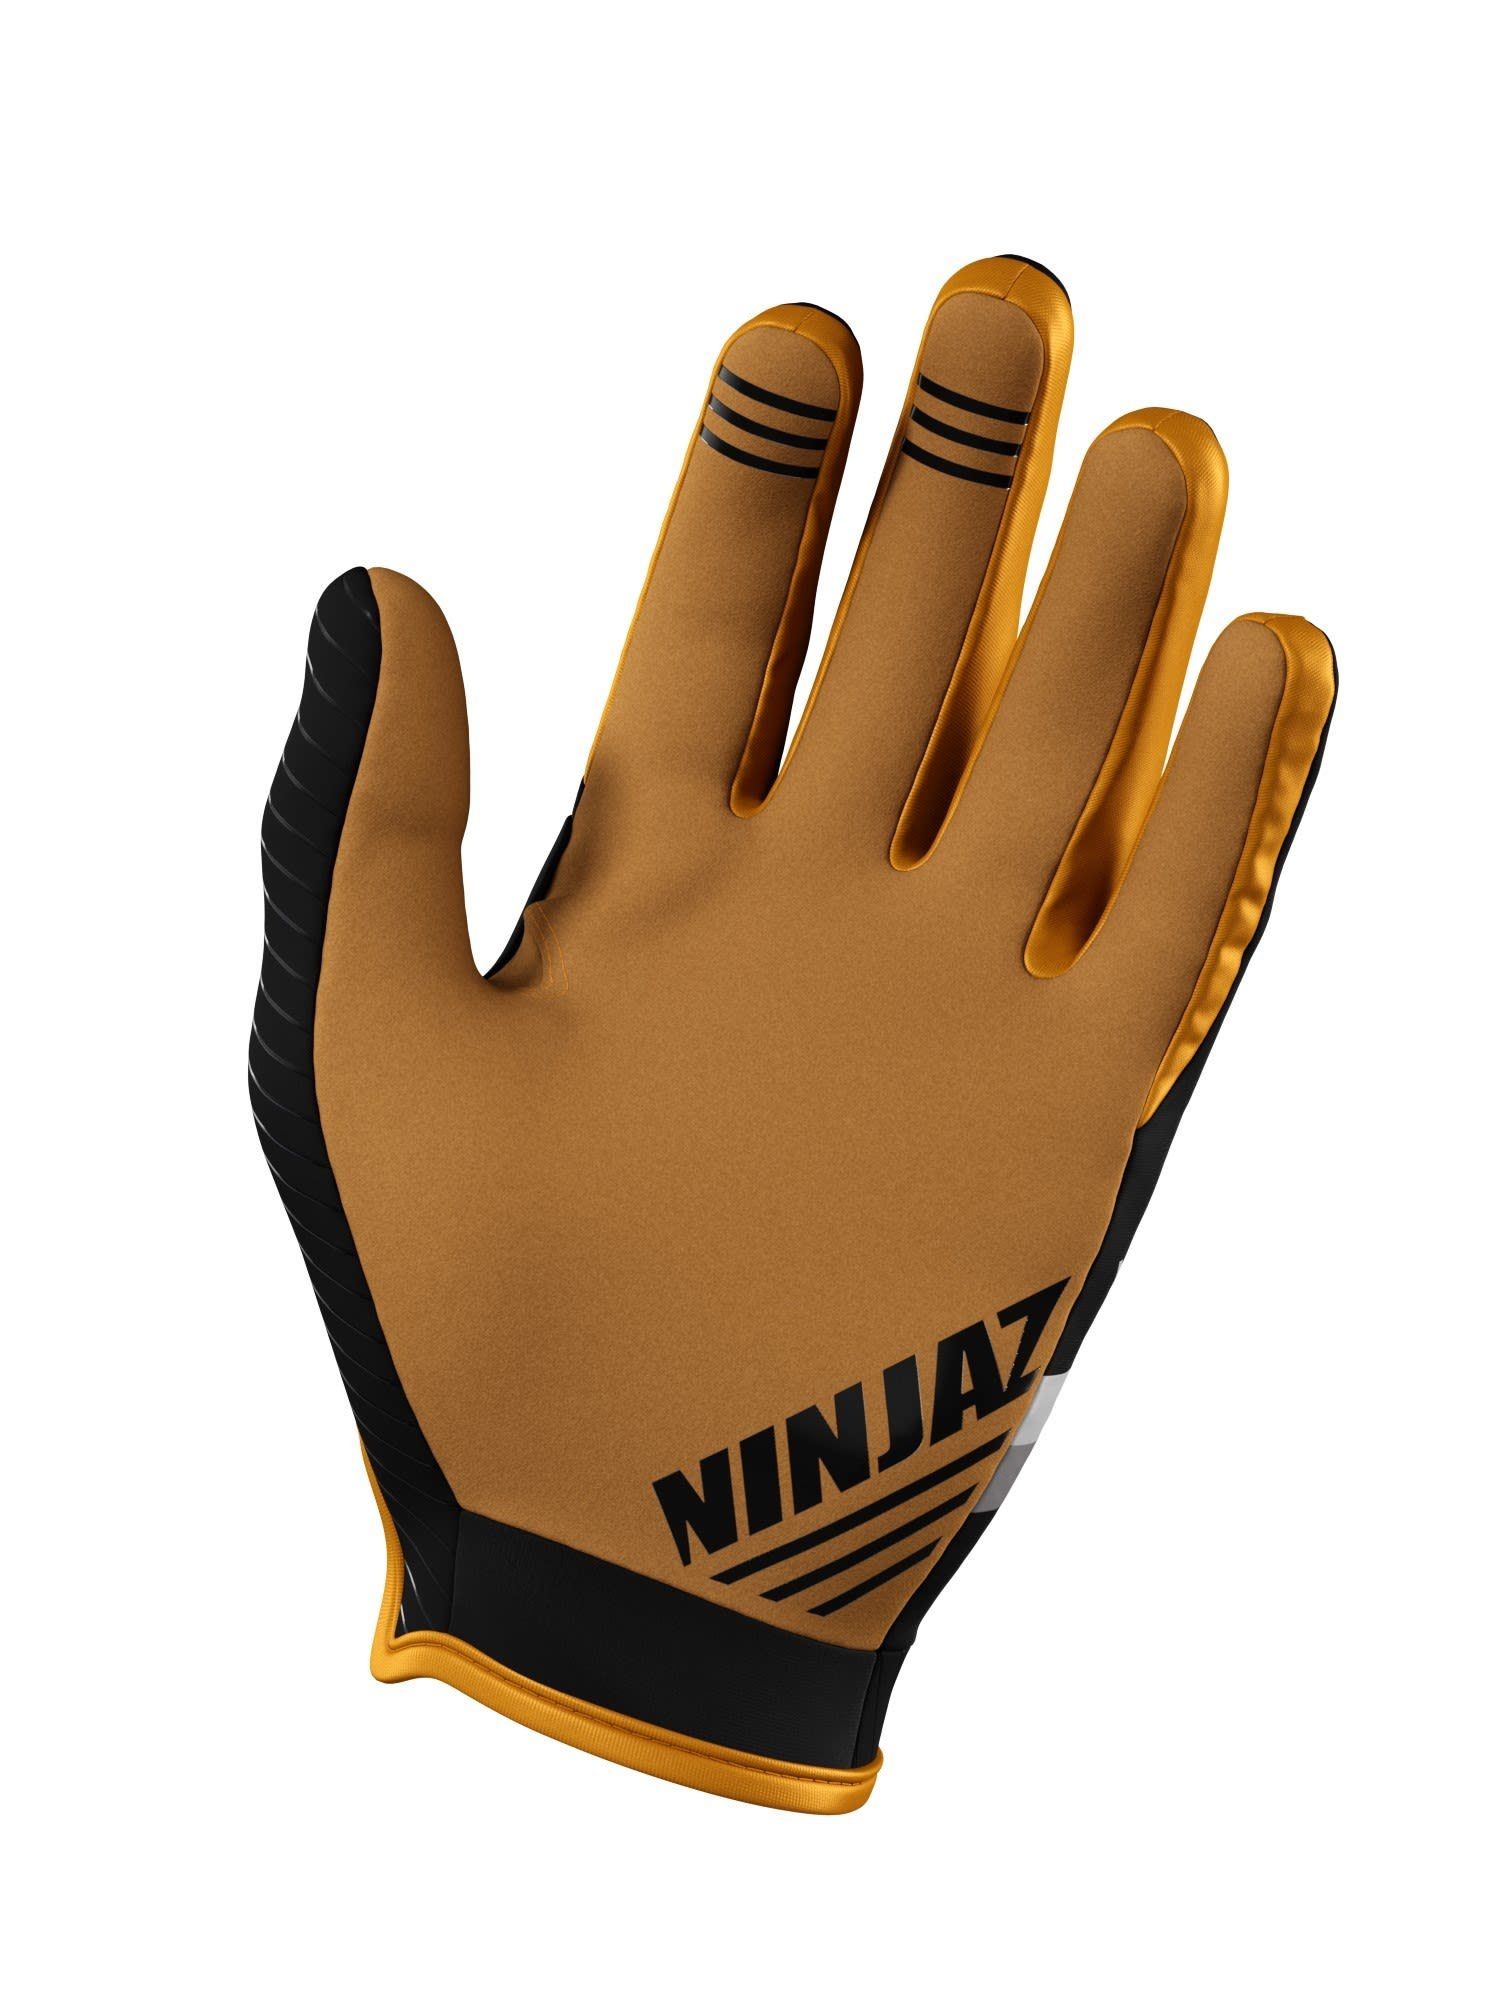 Accessoires Ride Fleecehandschuhe Cold Weather NinjaFlex Ninjaz Glove